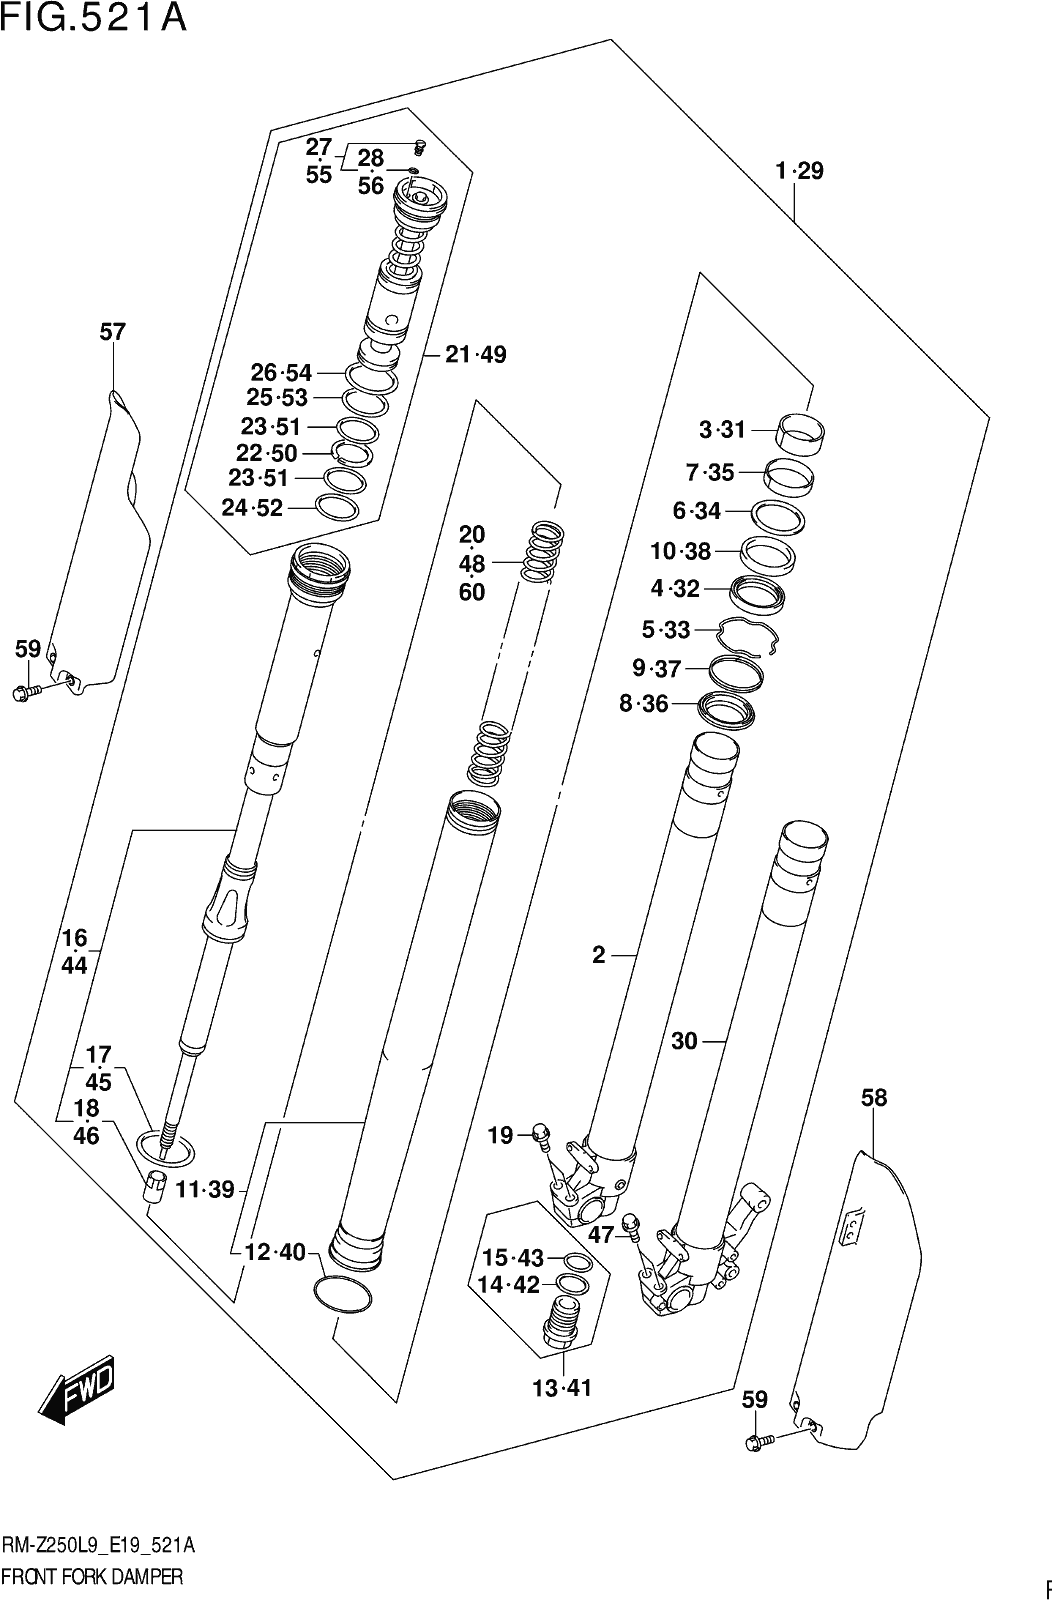 Fig.521a Front Fork Damper